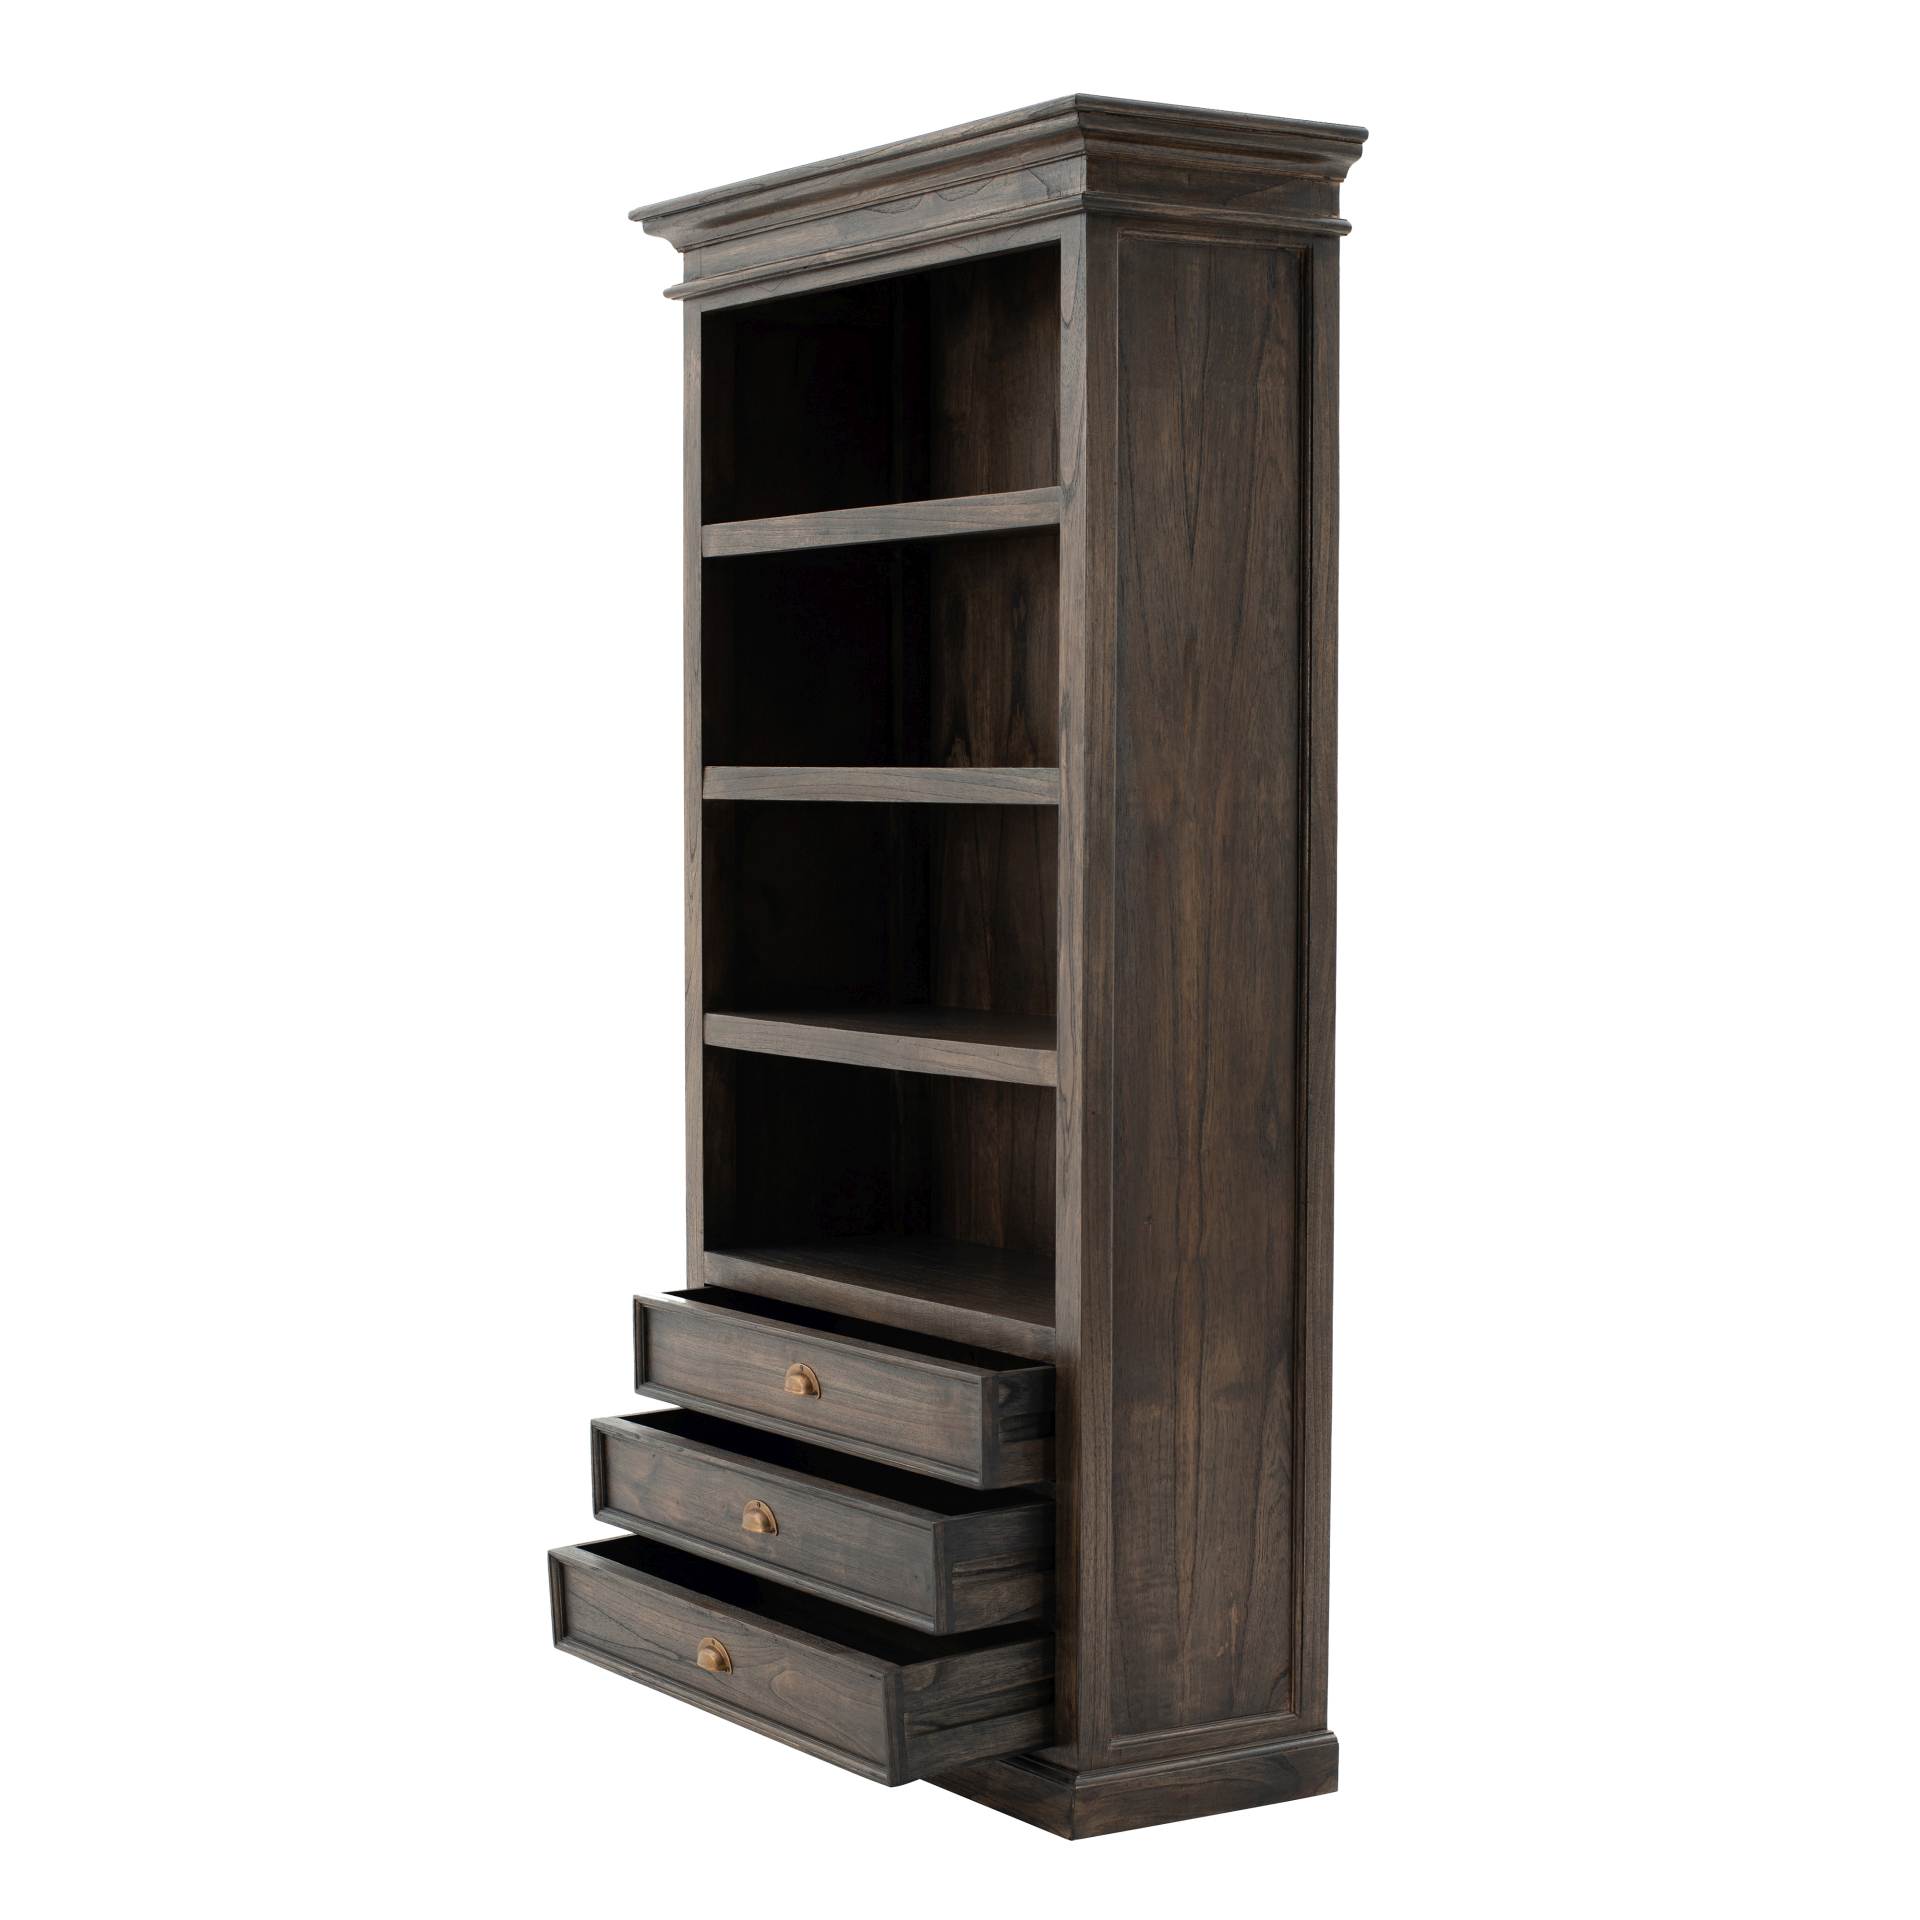 Der Bücherregal Halifax Mindi überzeugt mit seinem Landhaus Stil. Gefertigt wurde er aus Mindi Holz, welches einen braunen Farbton besitzt. Das Regal verfügt über drei Schubladen und vier offene Fächer. Die Breite beträgt 100 cm.